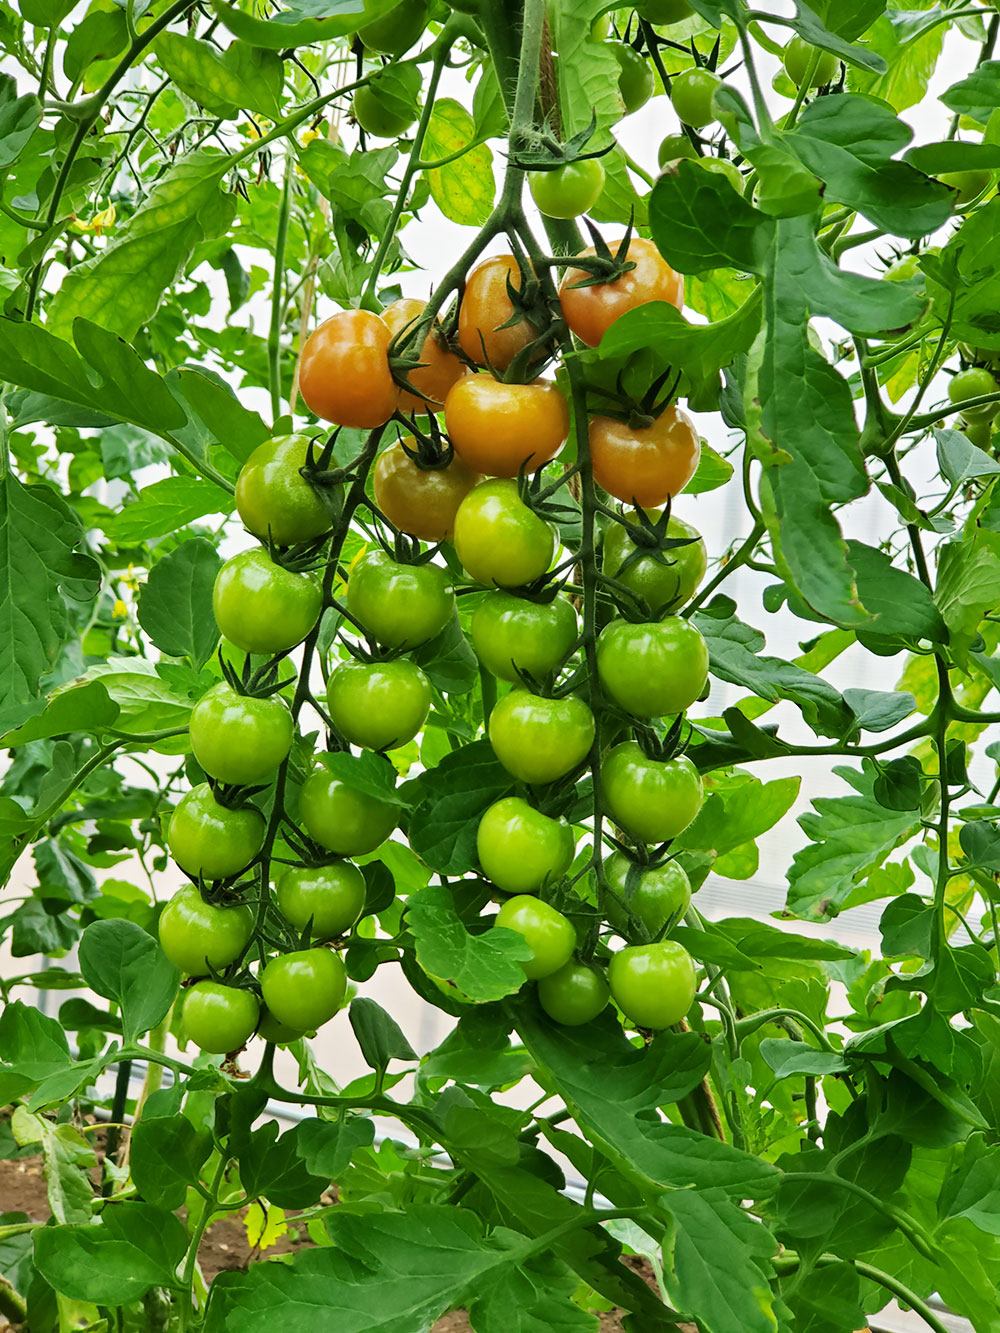 BLOF理論で栽培した、ありえない量の実がついているミニトマト